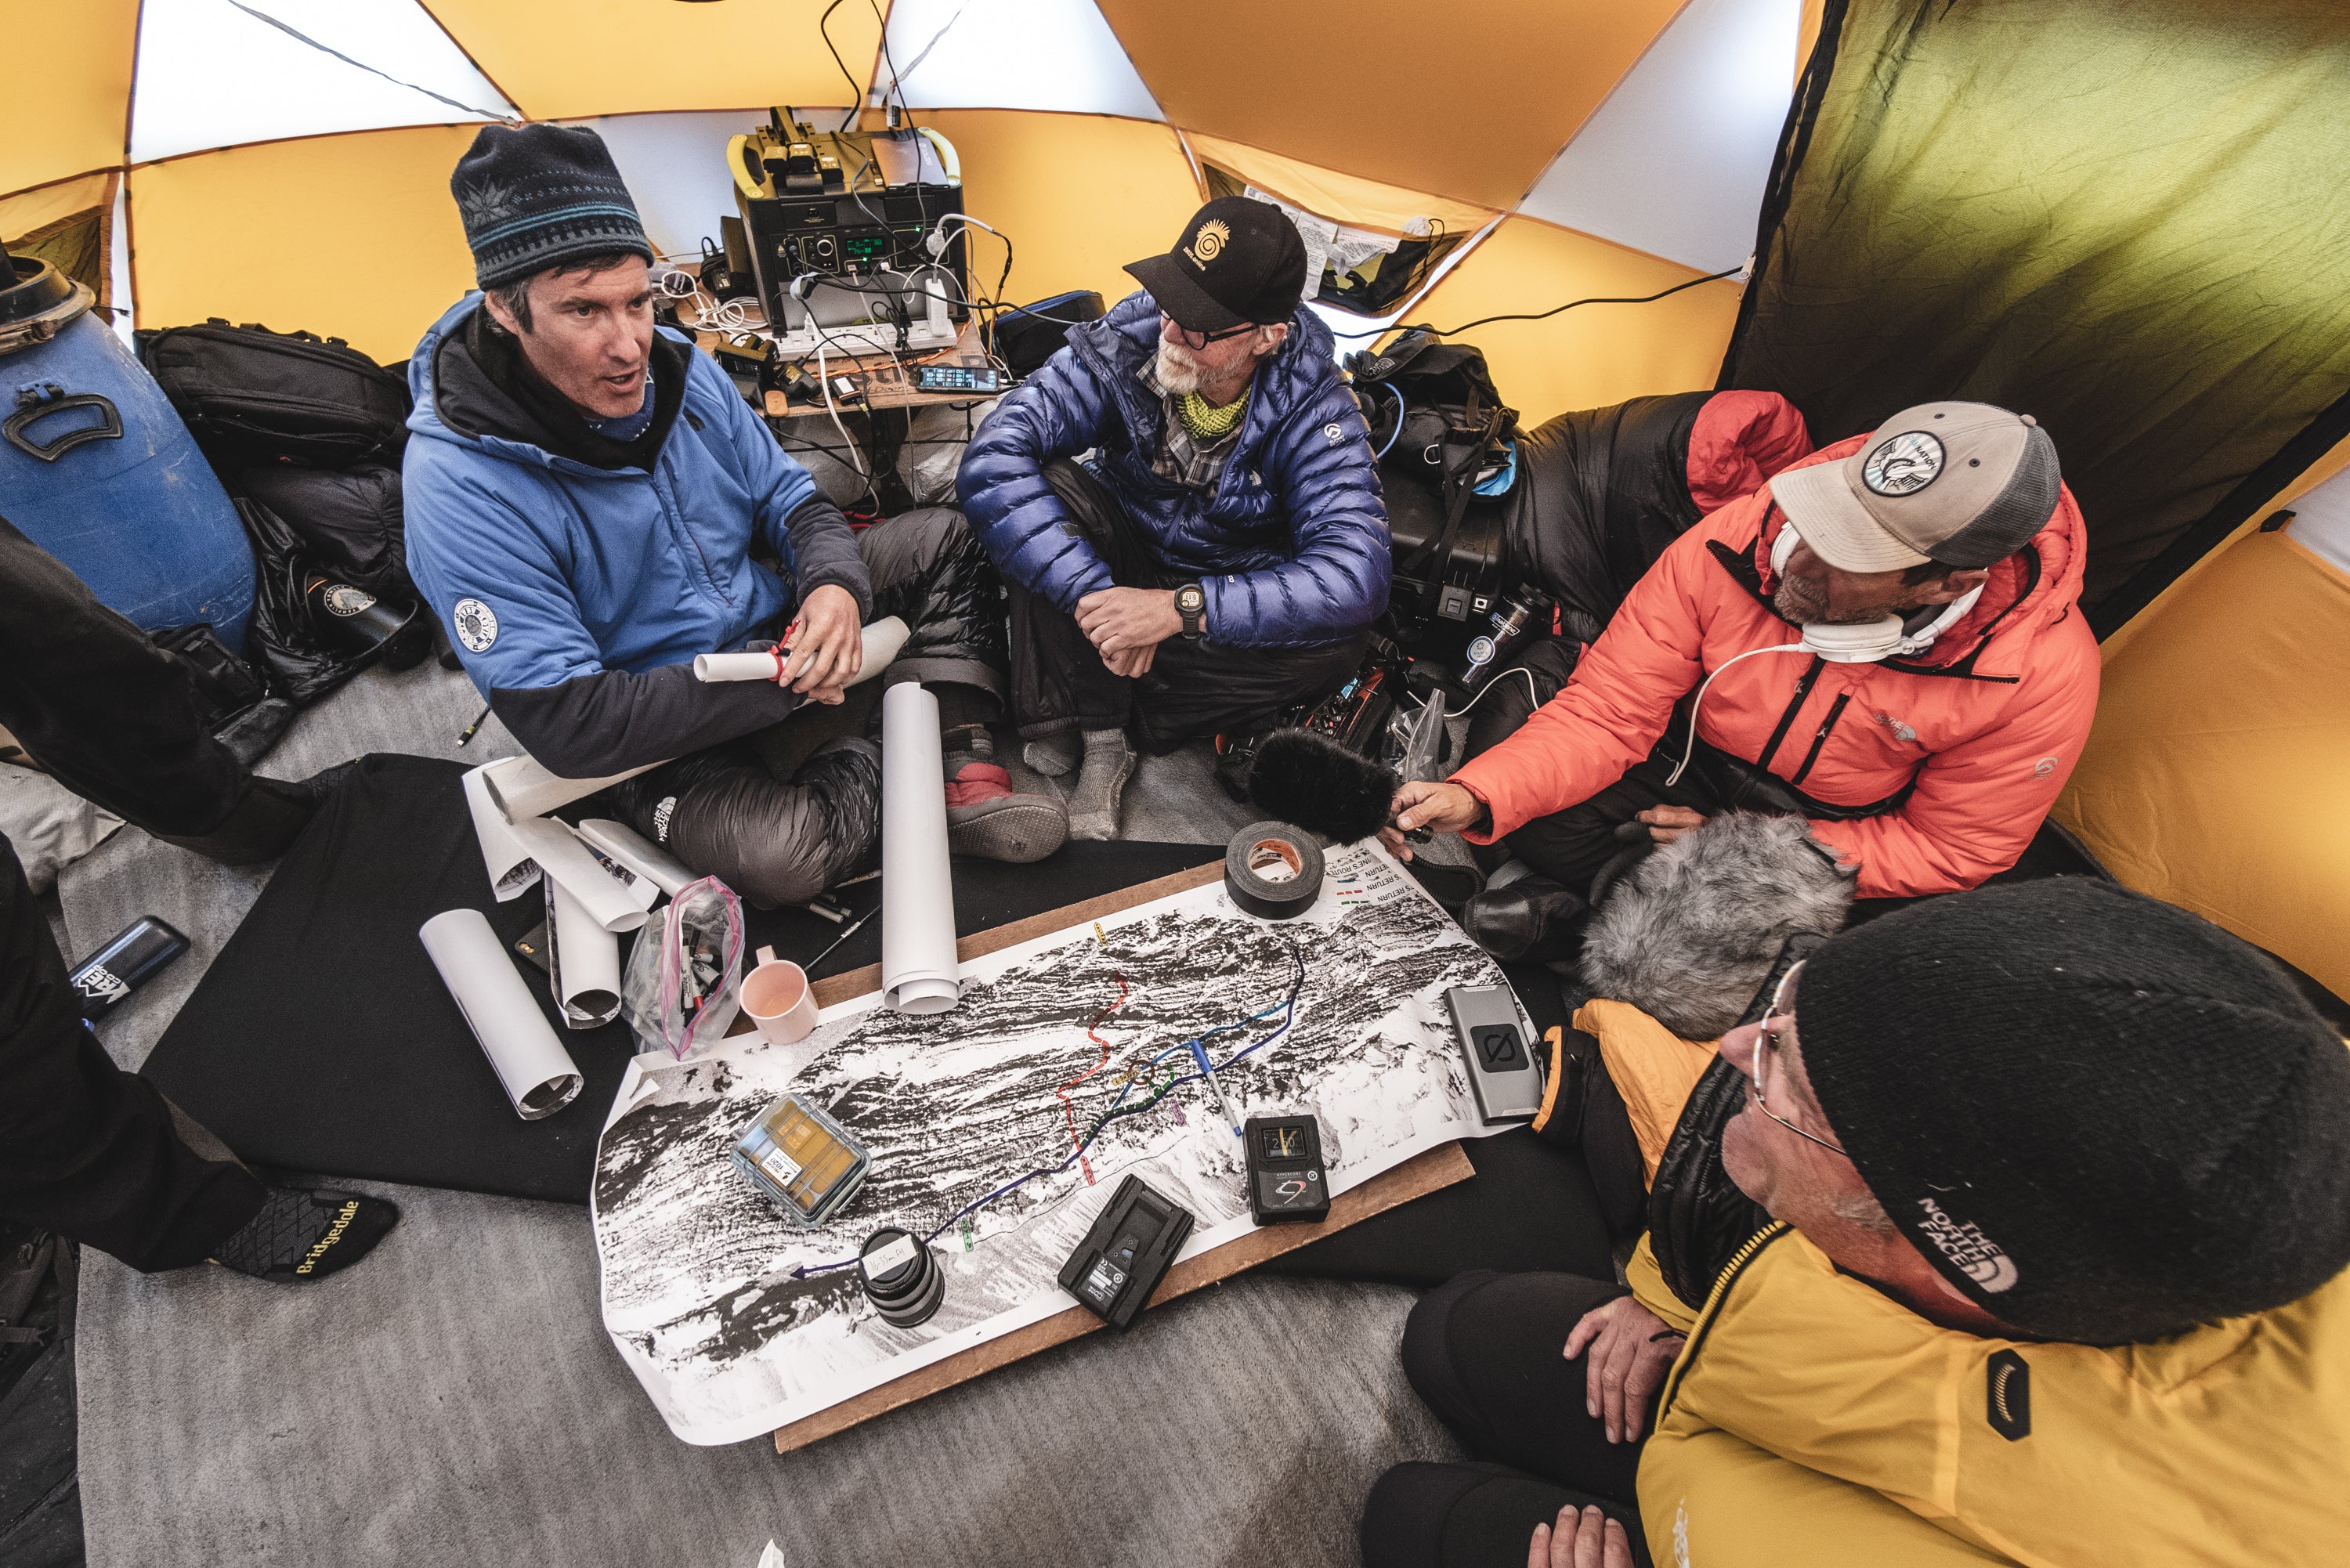 Renan Ozturk - Everest Team